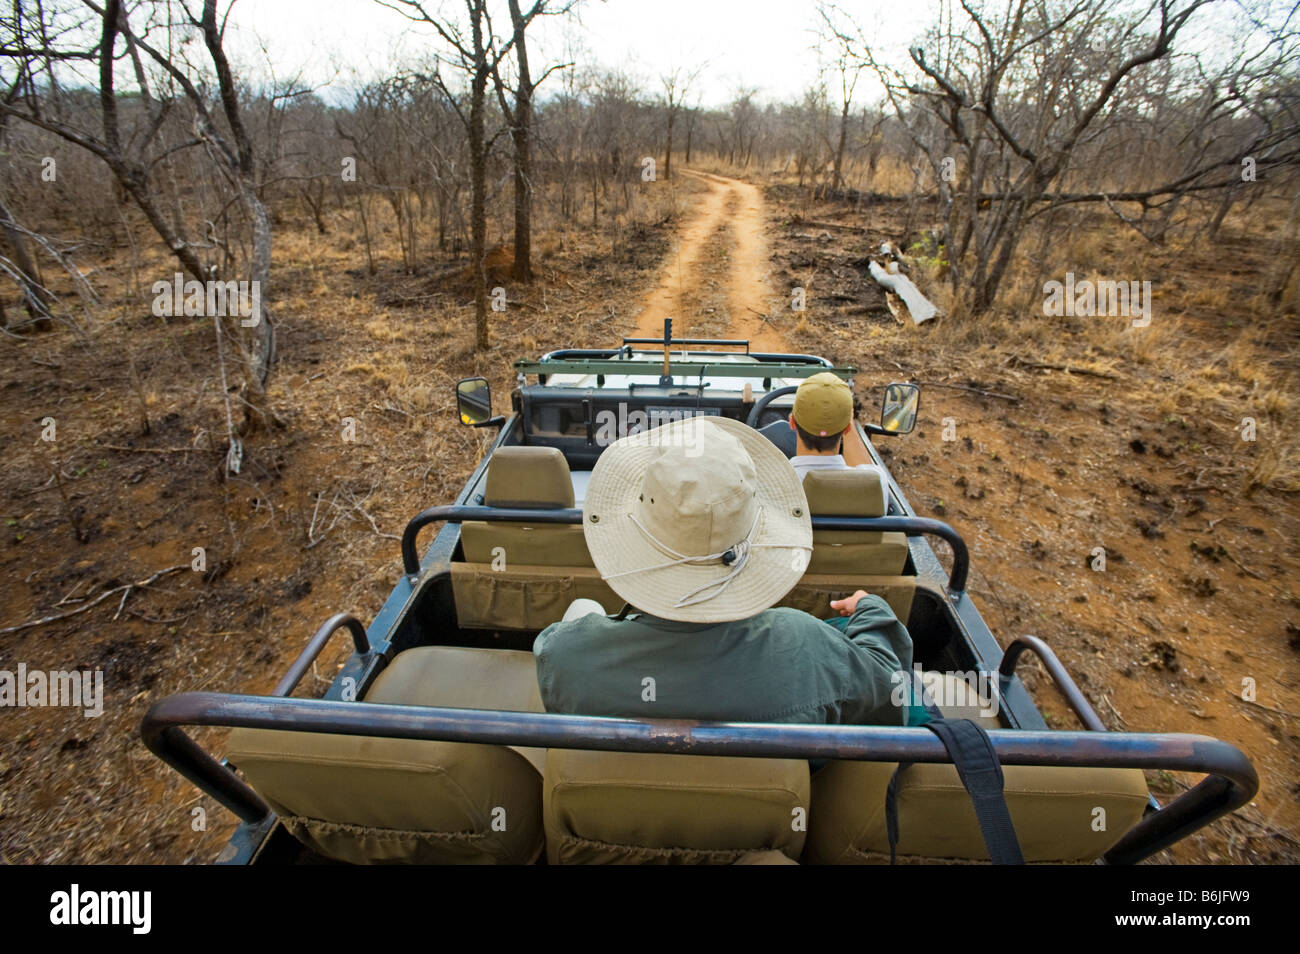 Game Drive avventura Sud-africa veicolo jeep safari persone auto-sud africa strada selvaggio animale game drive gamedrive road dus Foto Stock